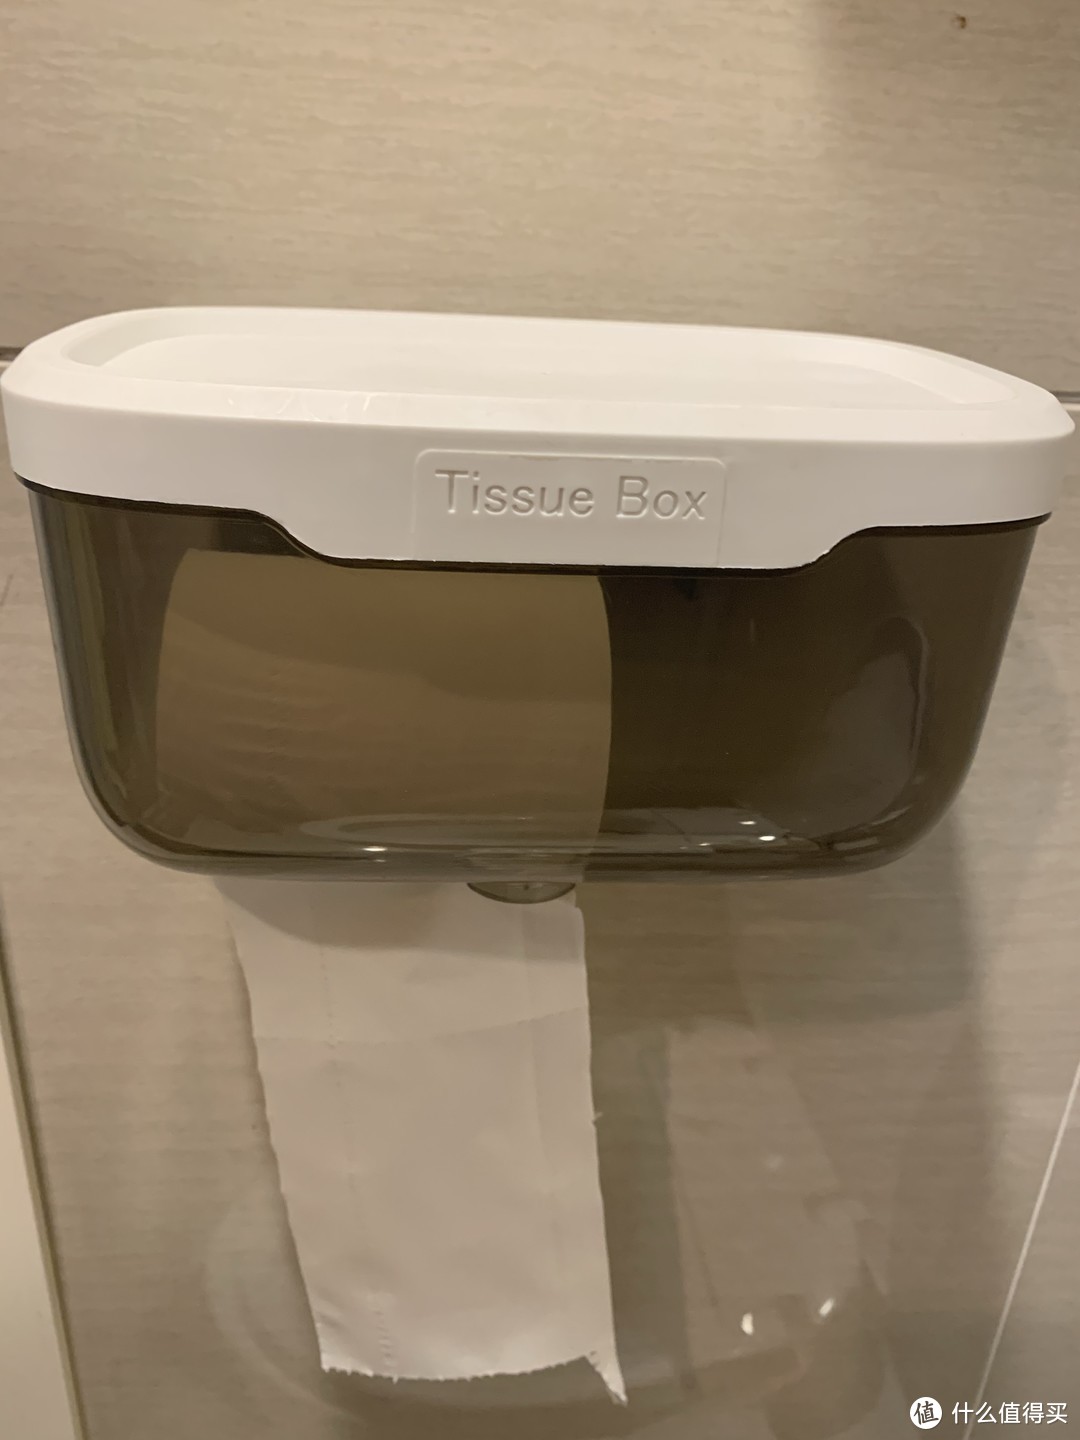 卫生间免打孔厕纸盒好用又环保。